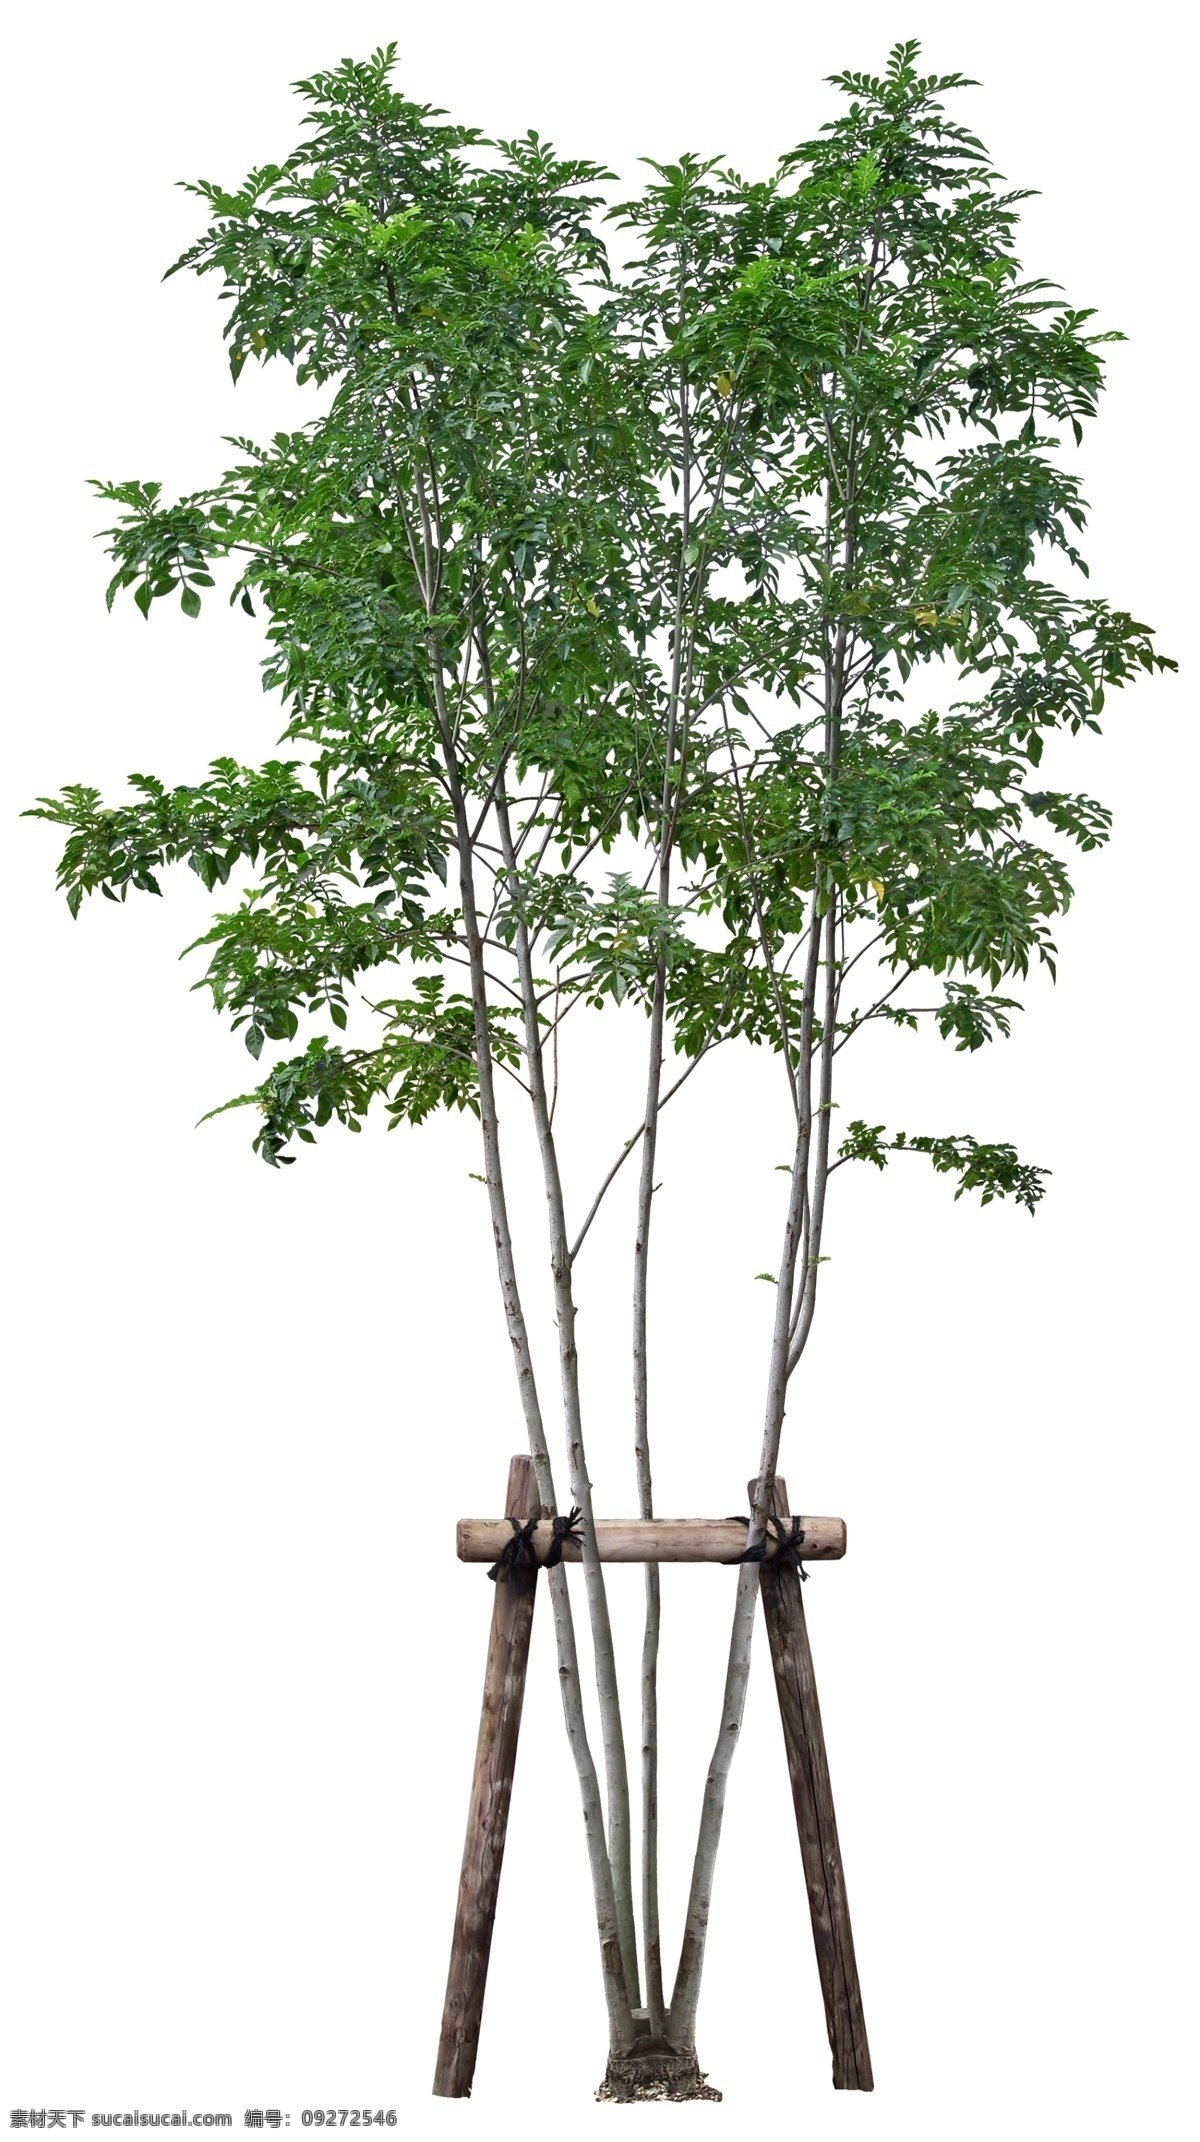 梣 高清 梣psd 乔木 树木 植物素材 psd素材 植物 绿化素材 环境设计 景观设计